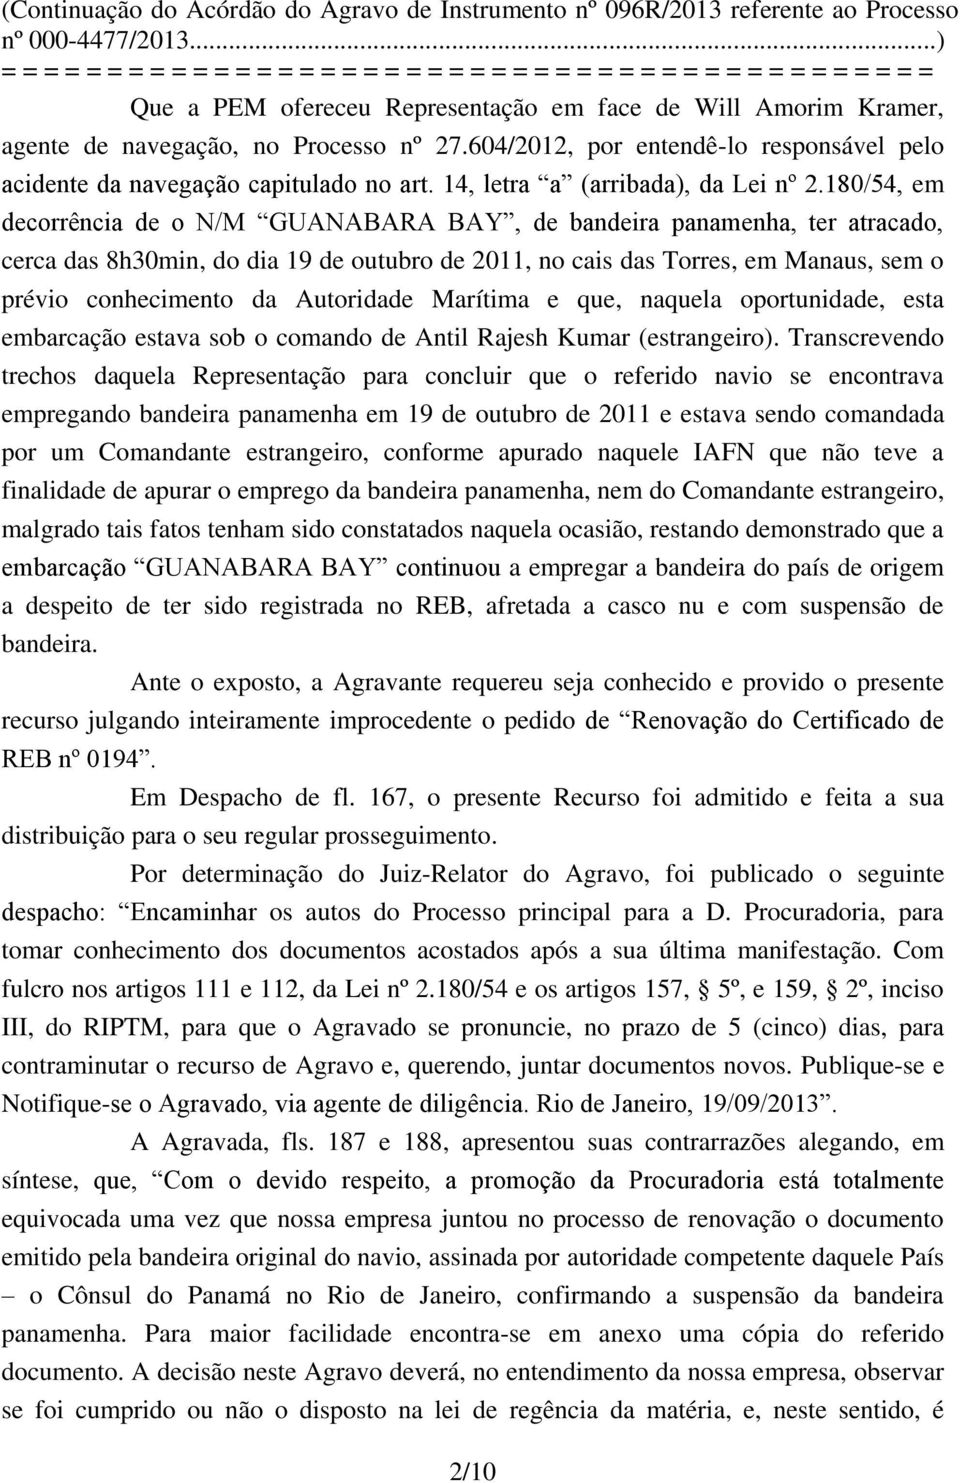 180/54, em decorrência de o N/M GUANABARA BAY, de bandeira panamenha, ter atracado, cerca das 8h30min, do dia 19 de outubro de 2011, no cais das Torres, em Manaus, sem o prévio conhecimento da